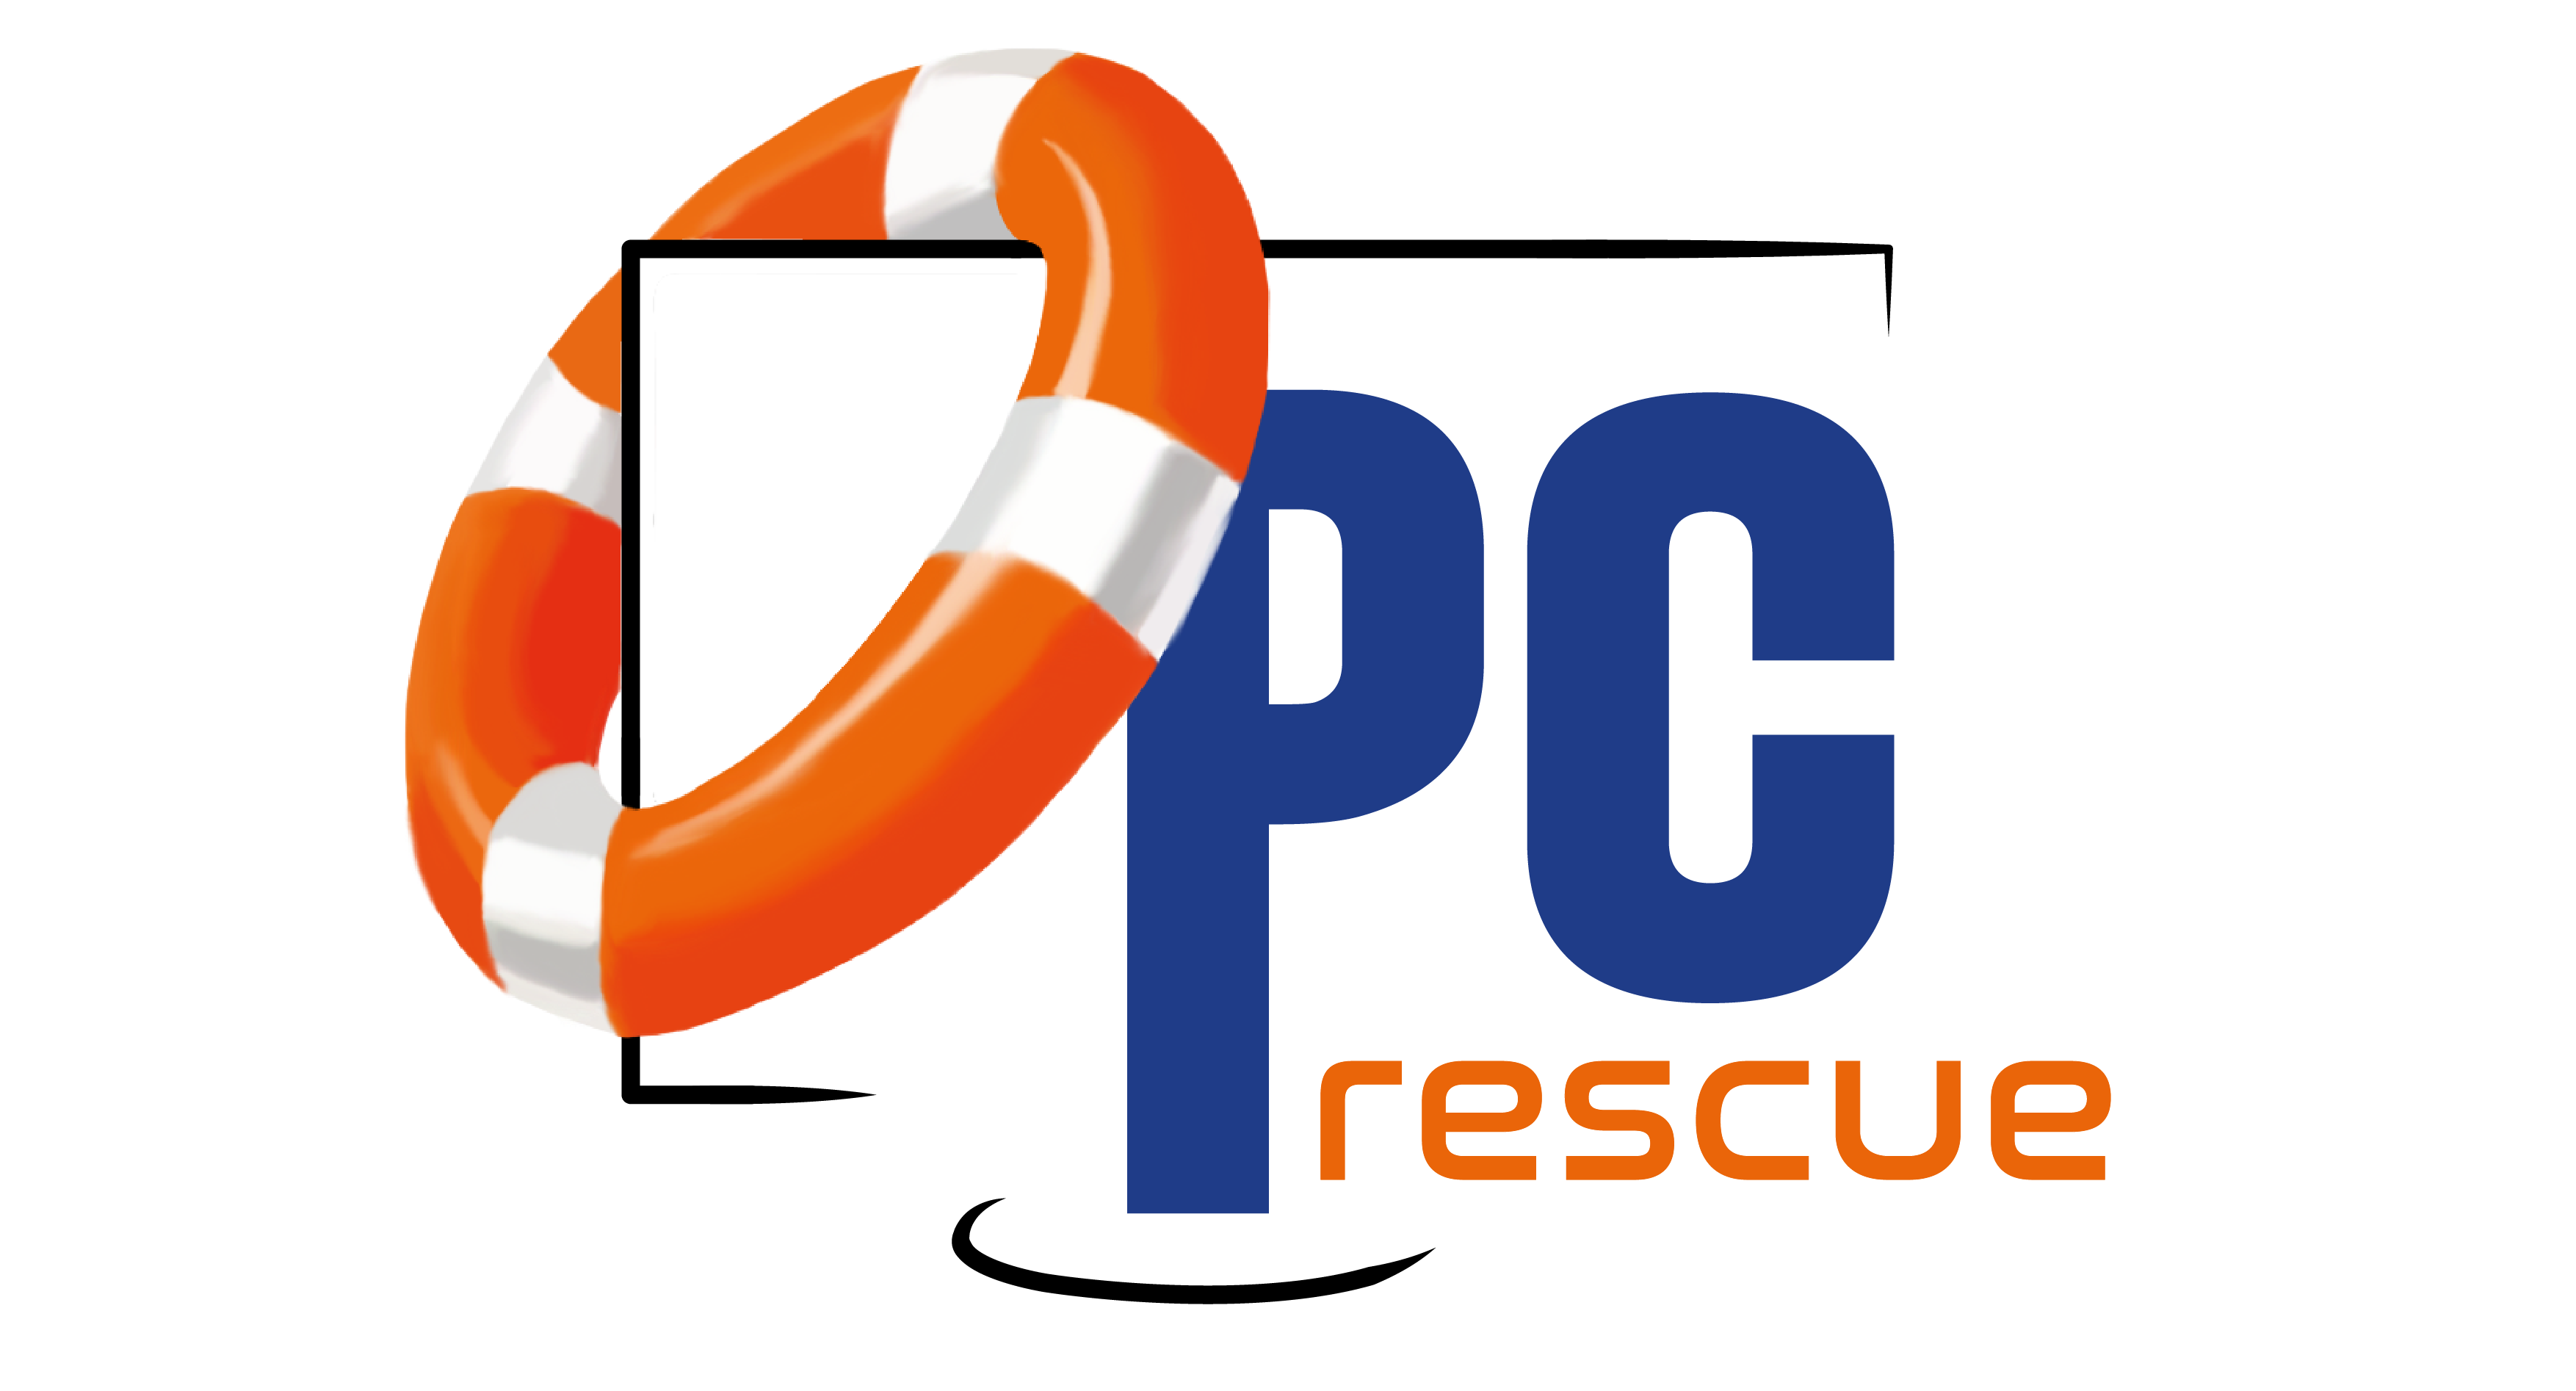 PC Rescue